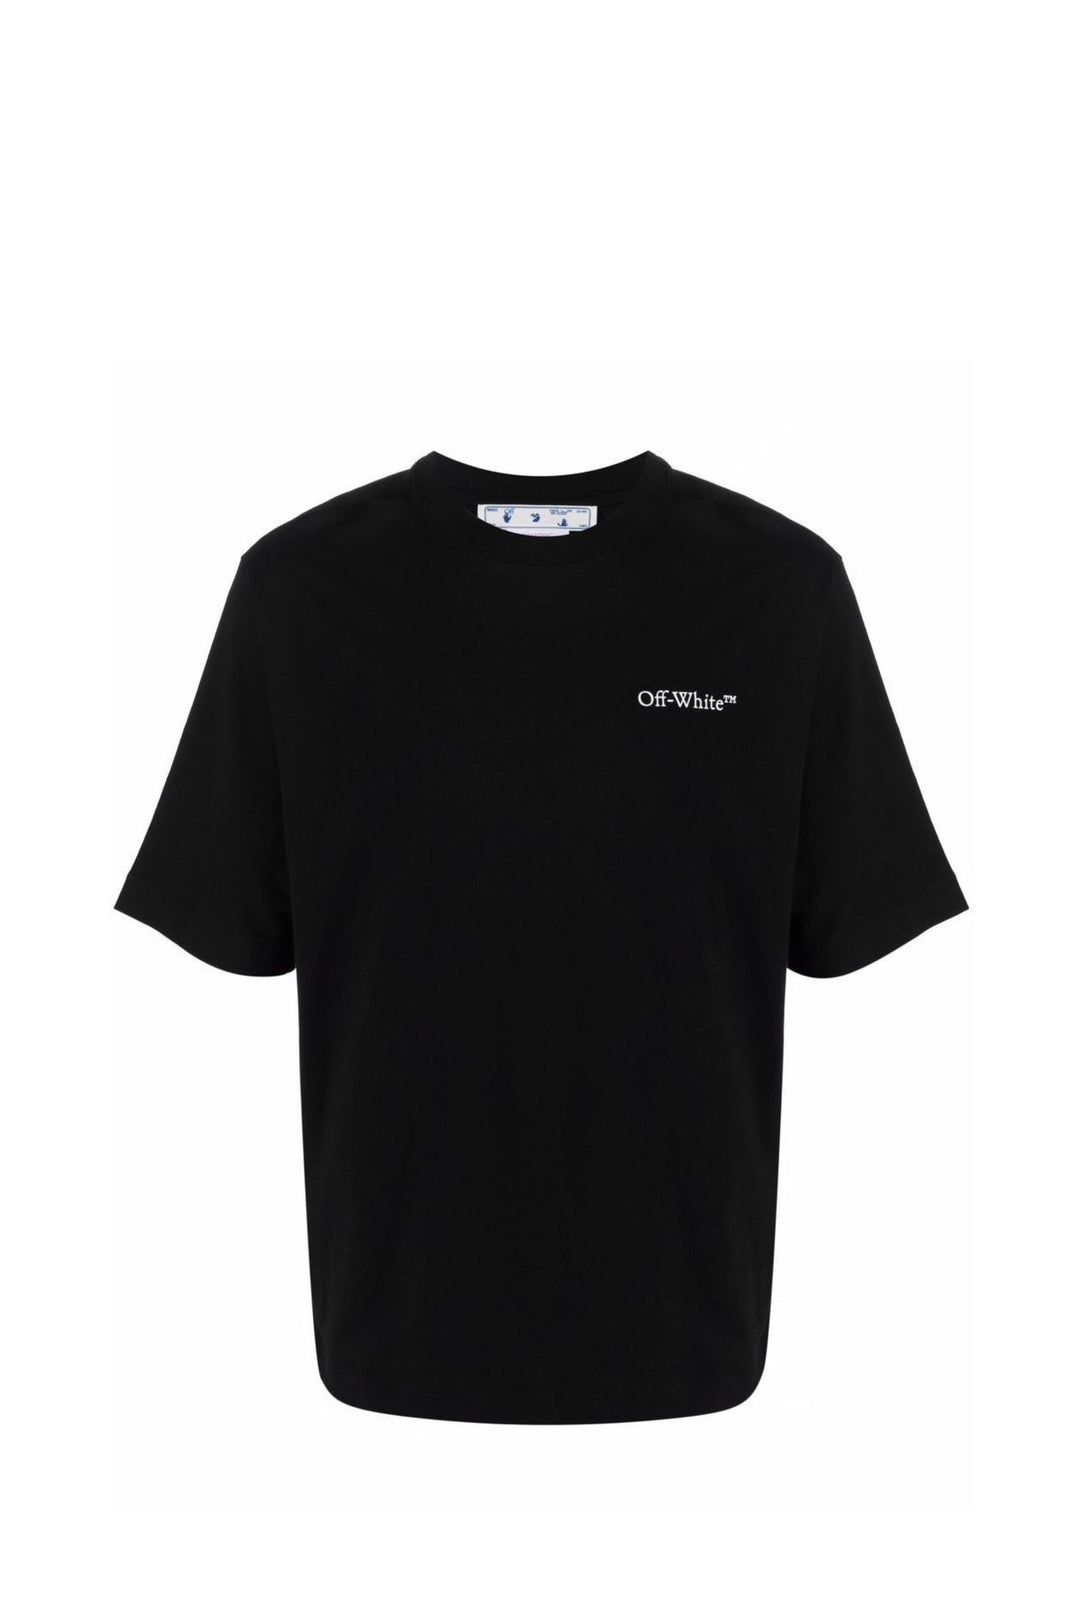 T-Shirt Nera con Stampa Caravaggio